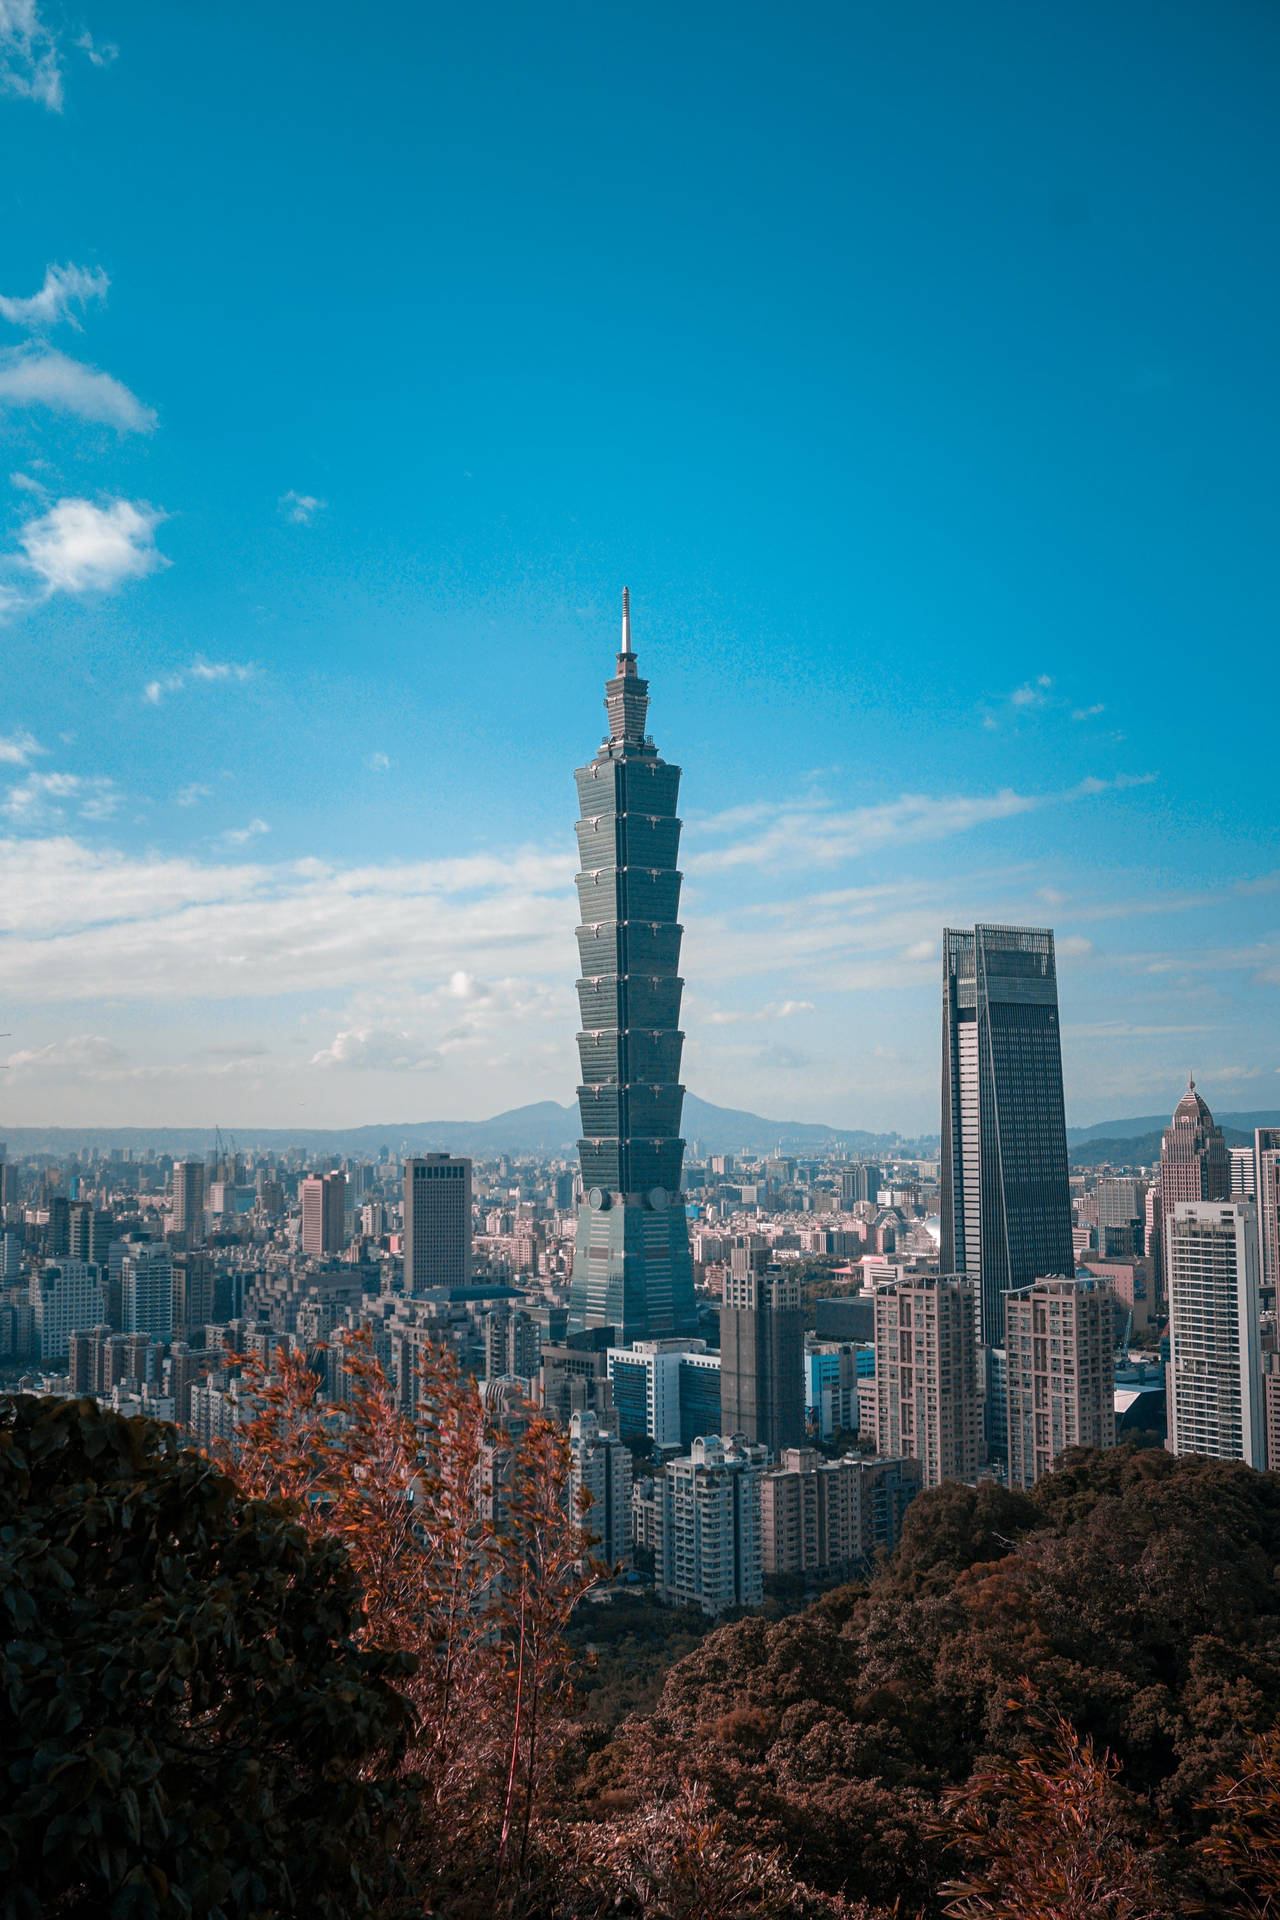 Taipei 101 Tower